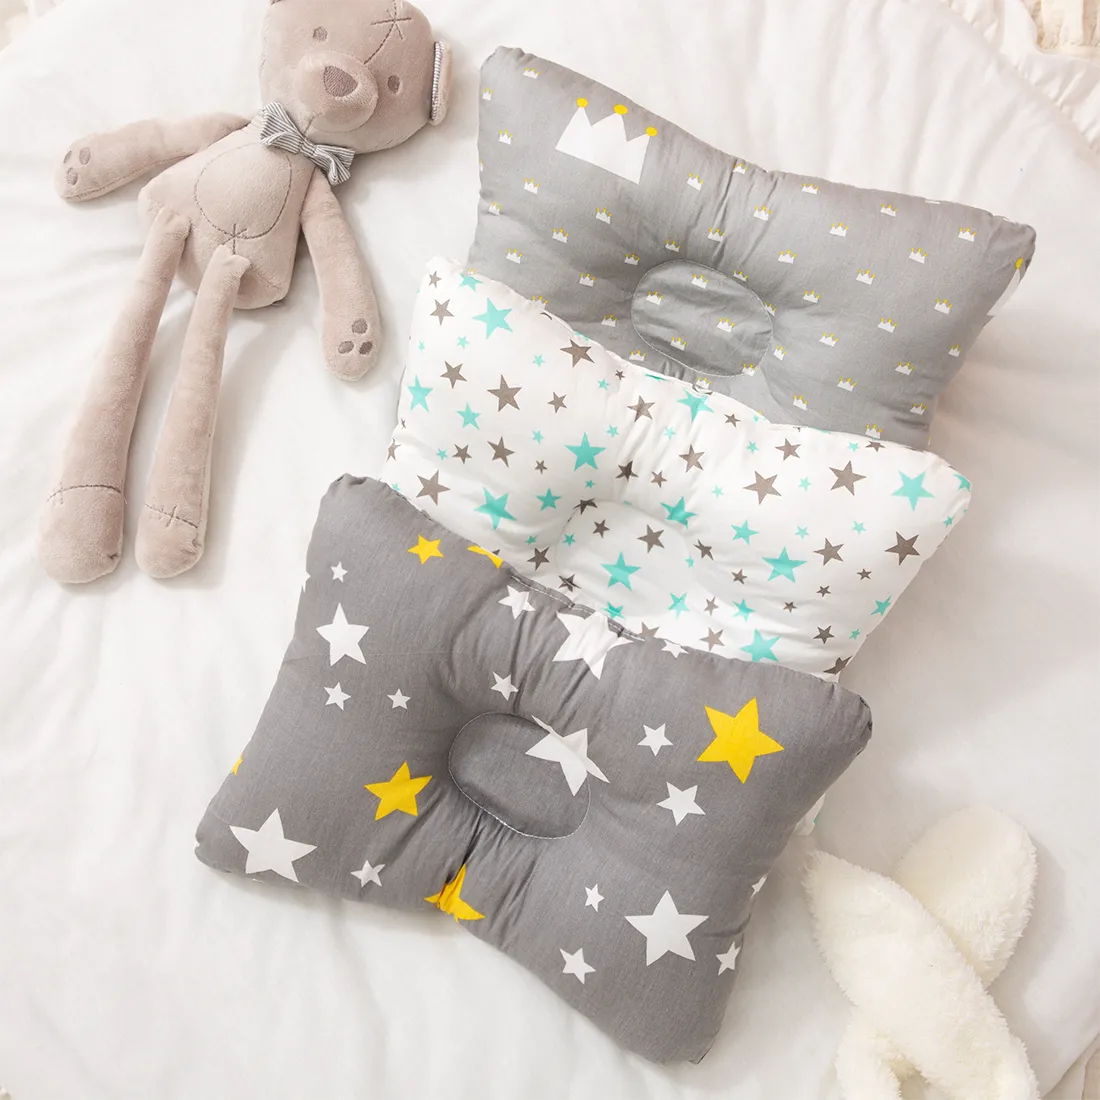 100%純棉嬰兒枕頭新生嬰兒防平頭嬰兒睡眠枕嬰兒牀上用品睡眠定位器支撐枕頭（25 * 19釐米/ 9.84 * 7.48英寸0-12個月）